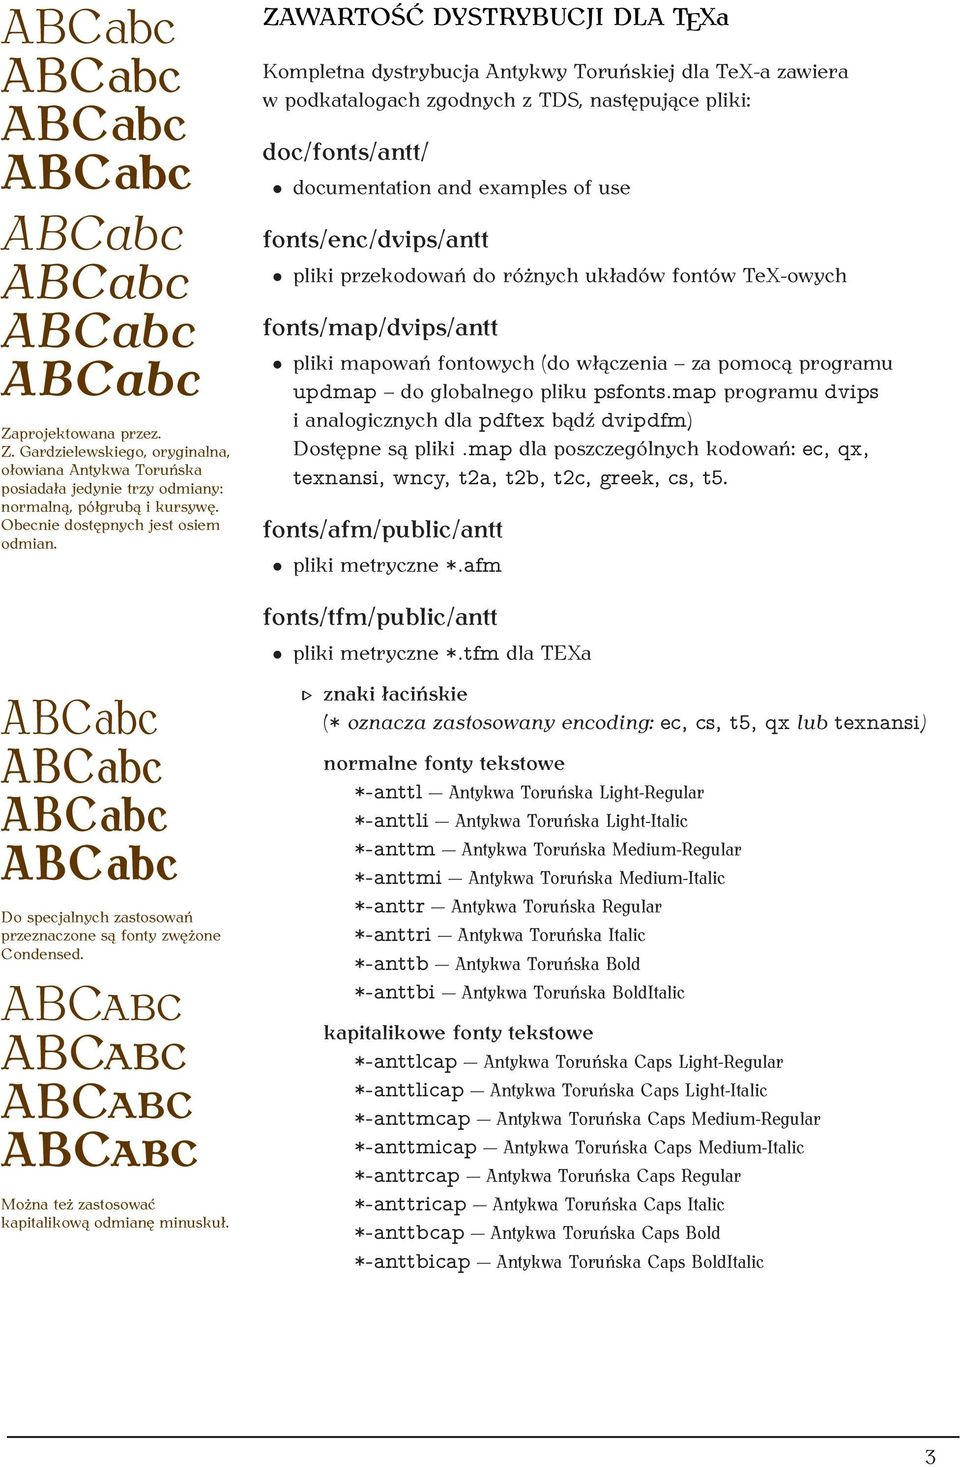 ZAWARTOŚĆ DYSTRYBUCJI DLA TEXa Kompletna dystrybucja Antykwy Toruńskiej dla TeX-a zawiera w podkatalogach zgodnych z TDS, następujące pliki: doc/fonts/antt/ documentation and examples of use